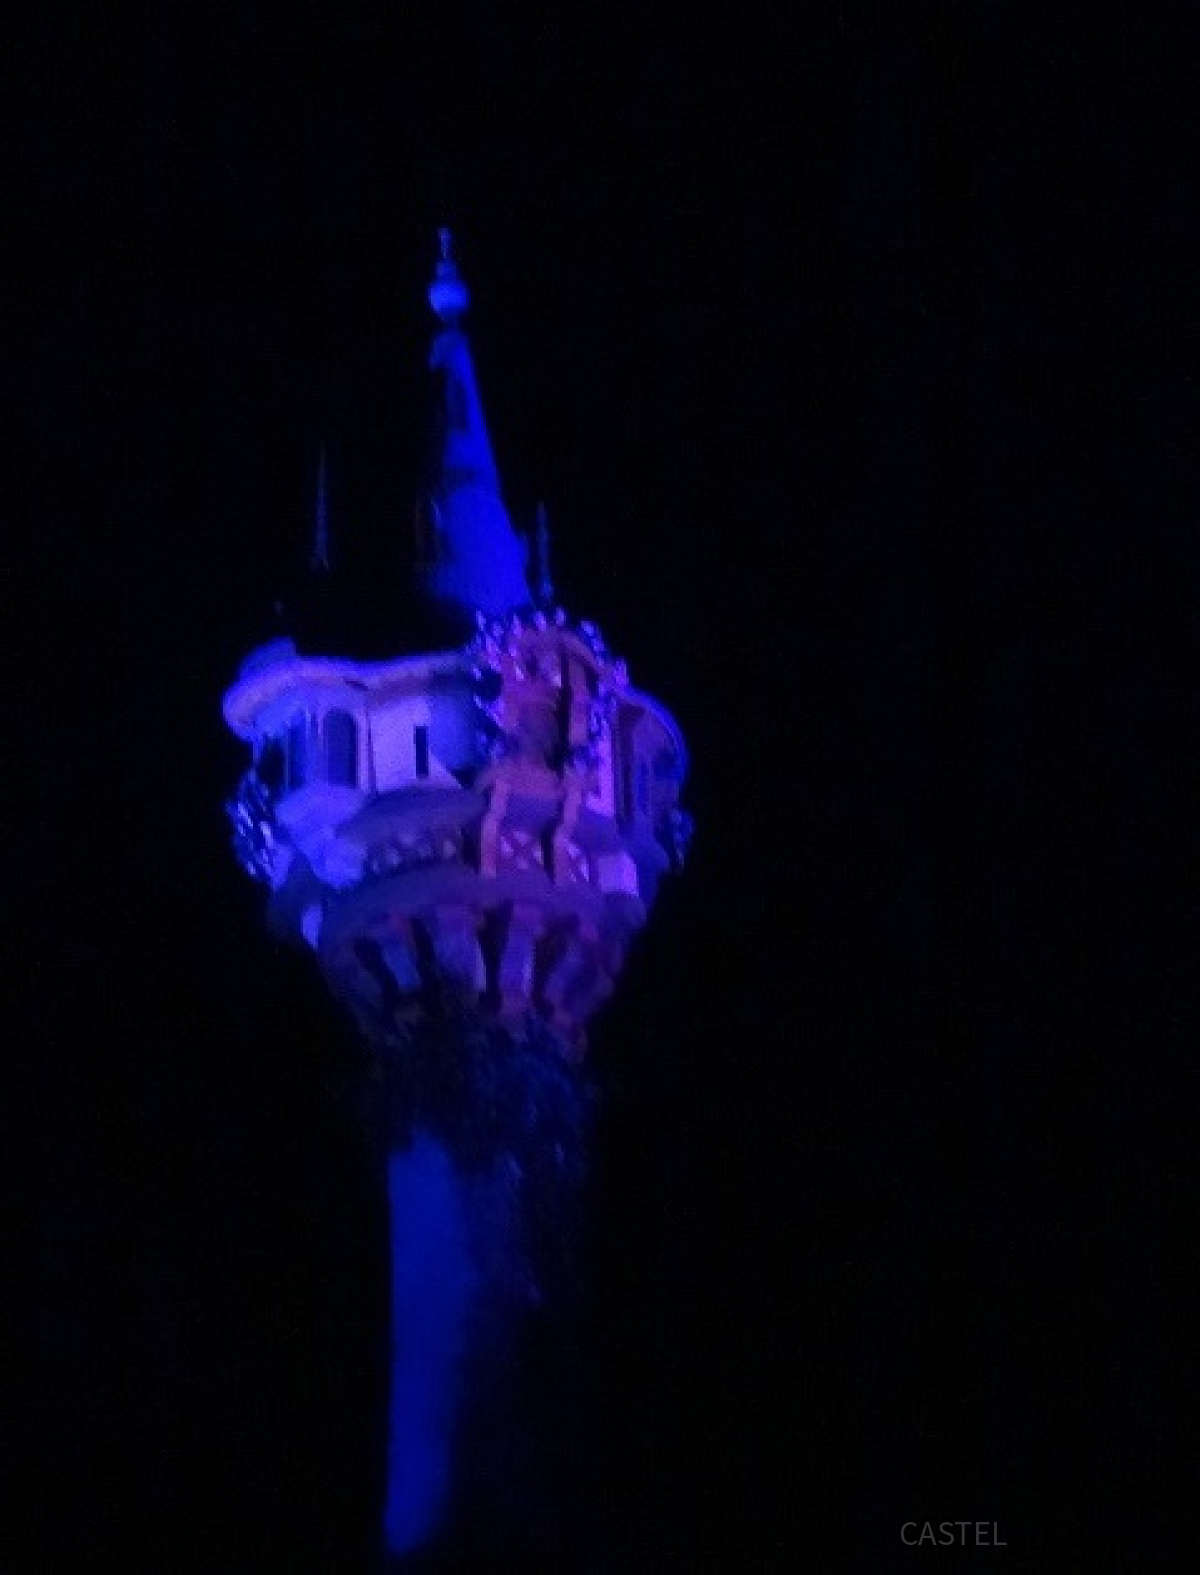 ラプンツェルの塔